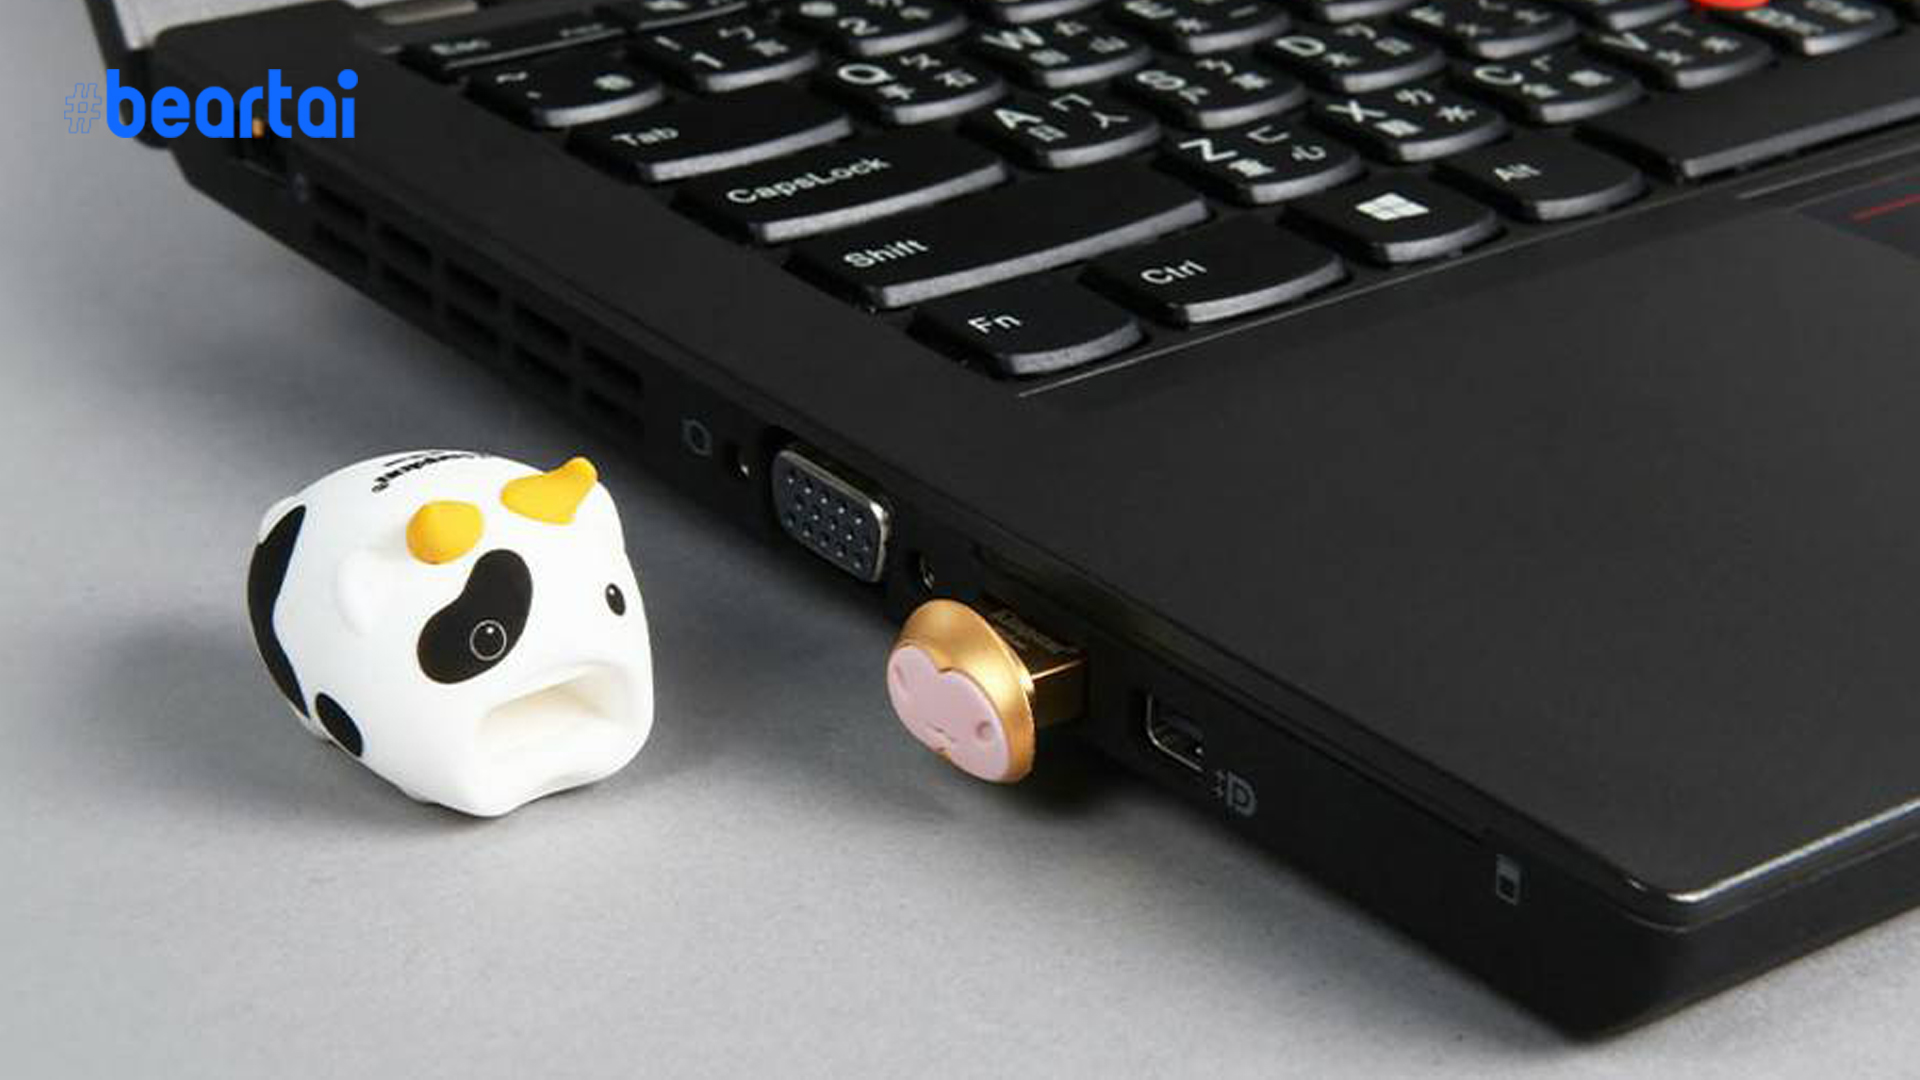 Kingston เปิดตัว Mini Cow แฟลชไดร์ฟ USB รุ่นพิเศษ ต้อนรับปี 2564 ในประเทศไทย